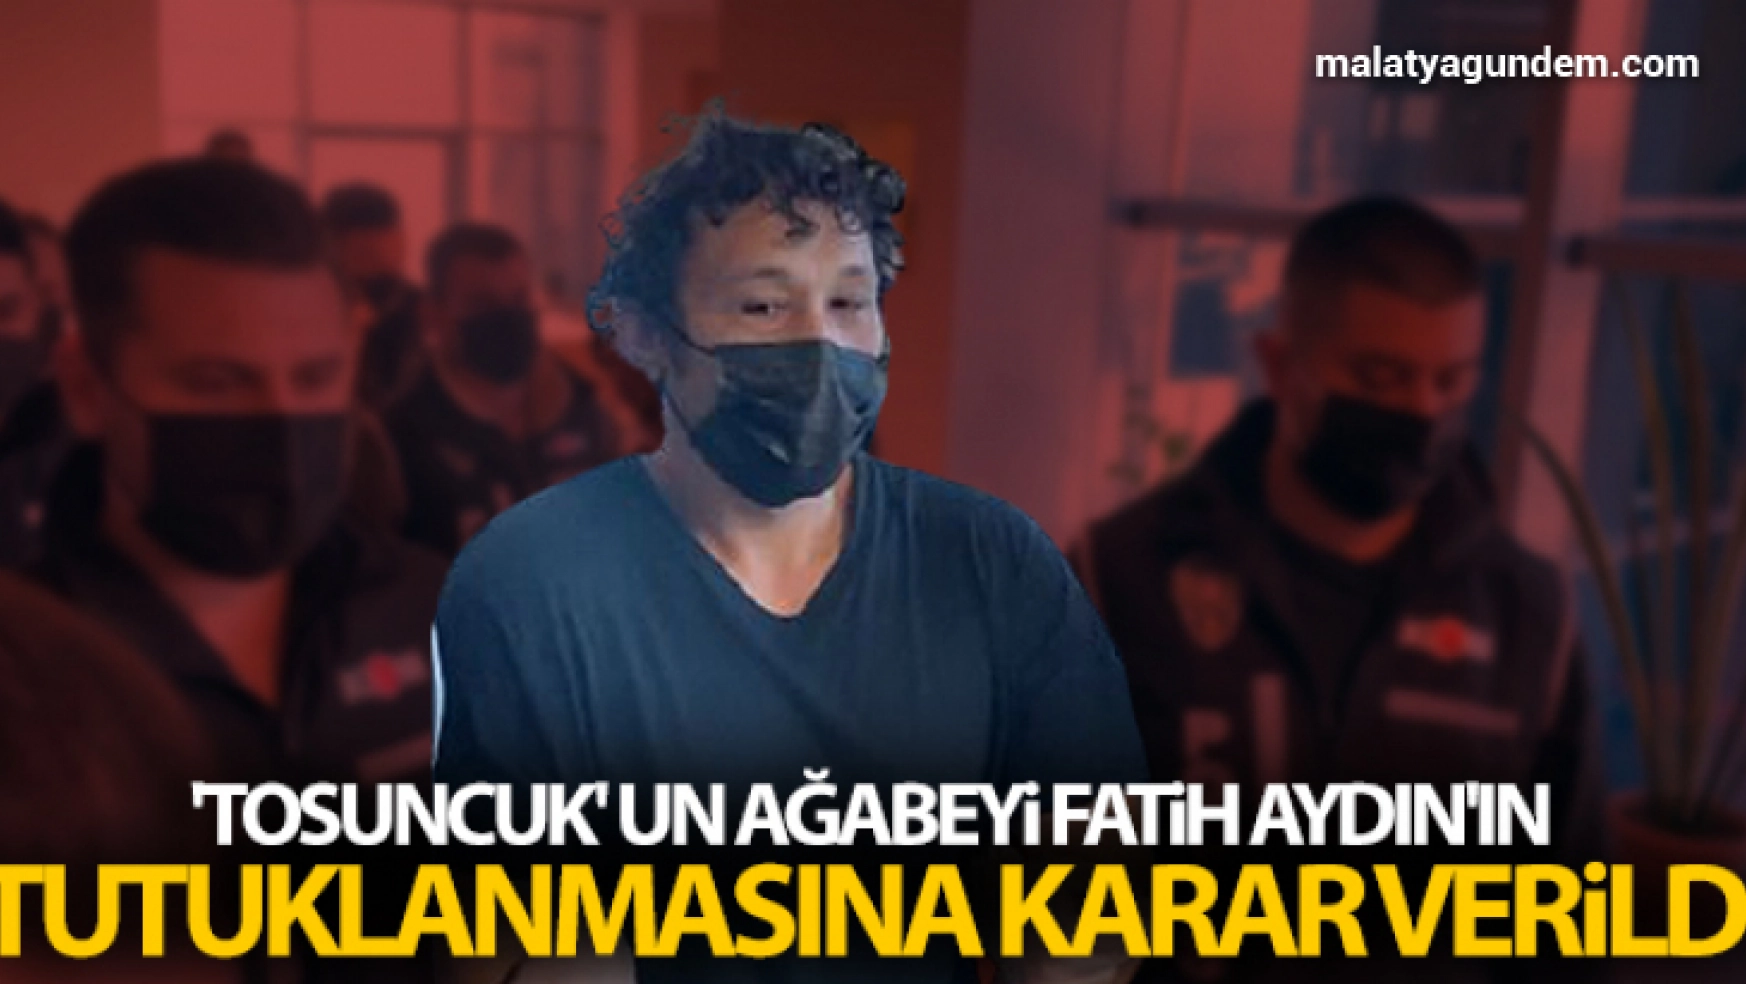 'Tosuncuk' un ağabeyi Fatih Aydın'ın tutuklanmasına karar verildi